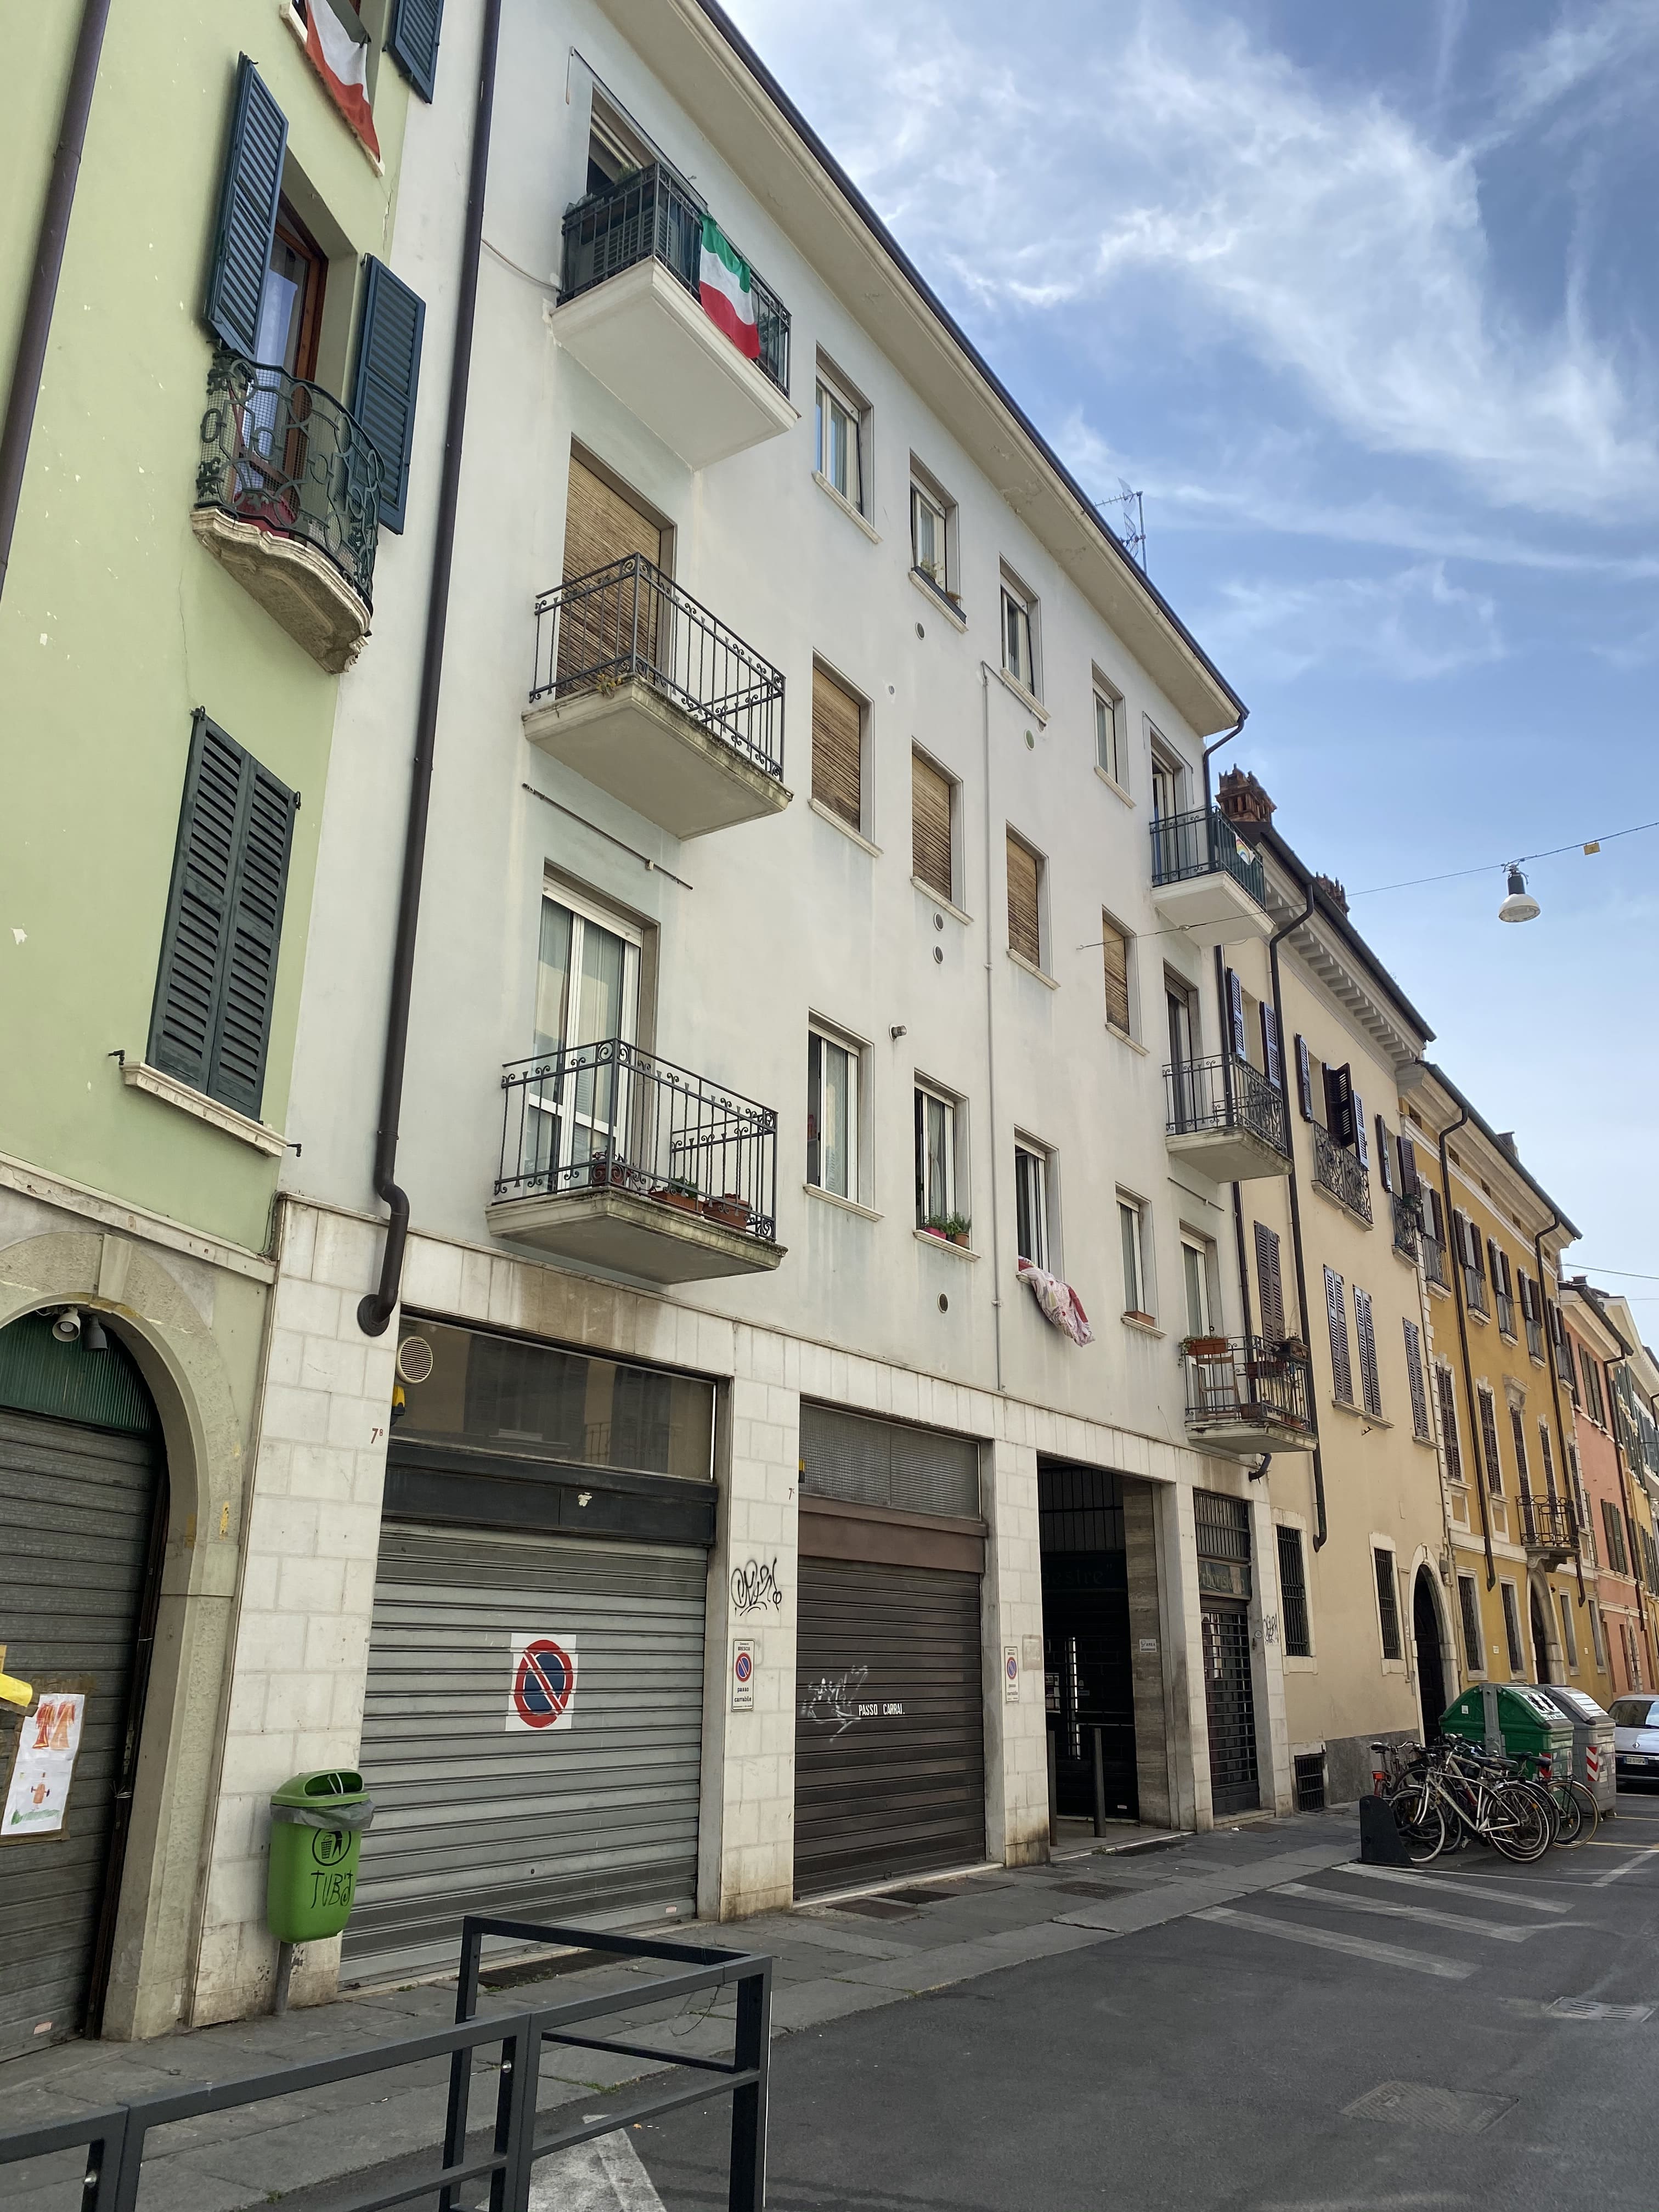 Casa in Contrata delle Bassiche, 7b/7c/9 (casa, privata) - Brescia (BS)  (XX)